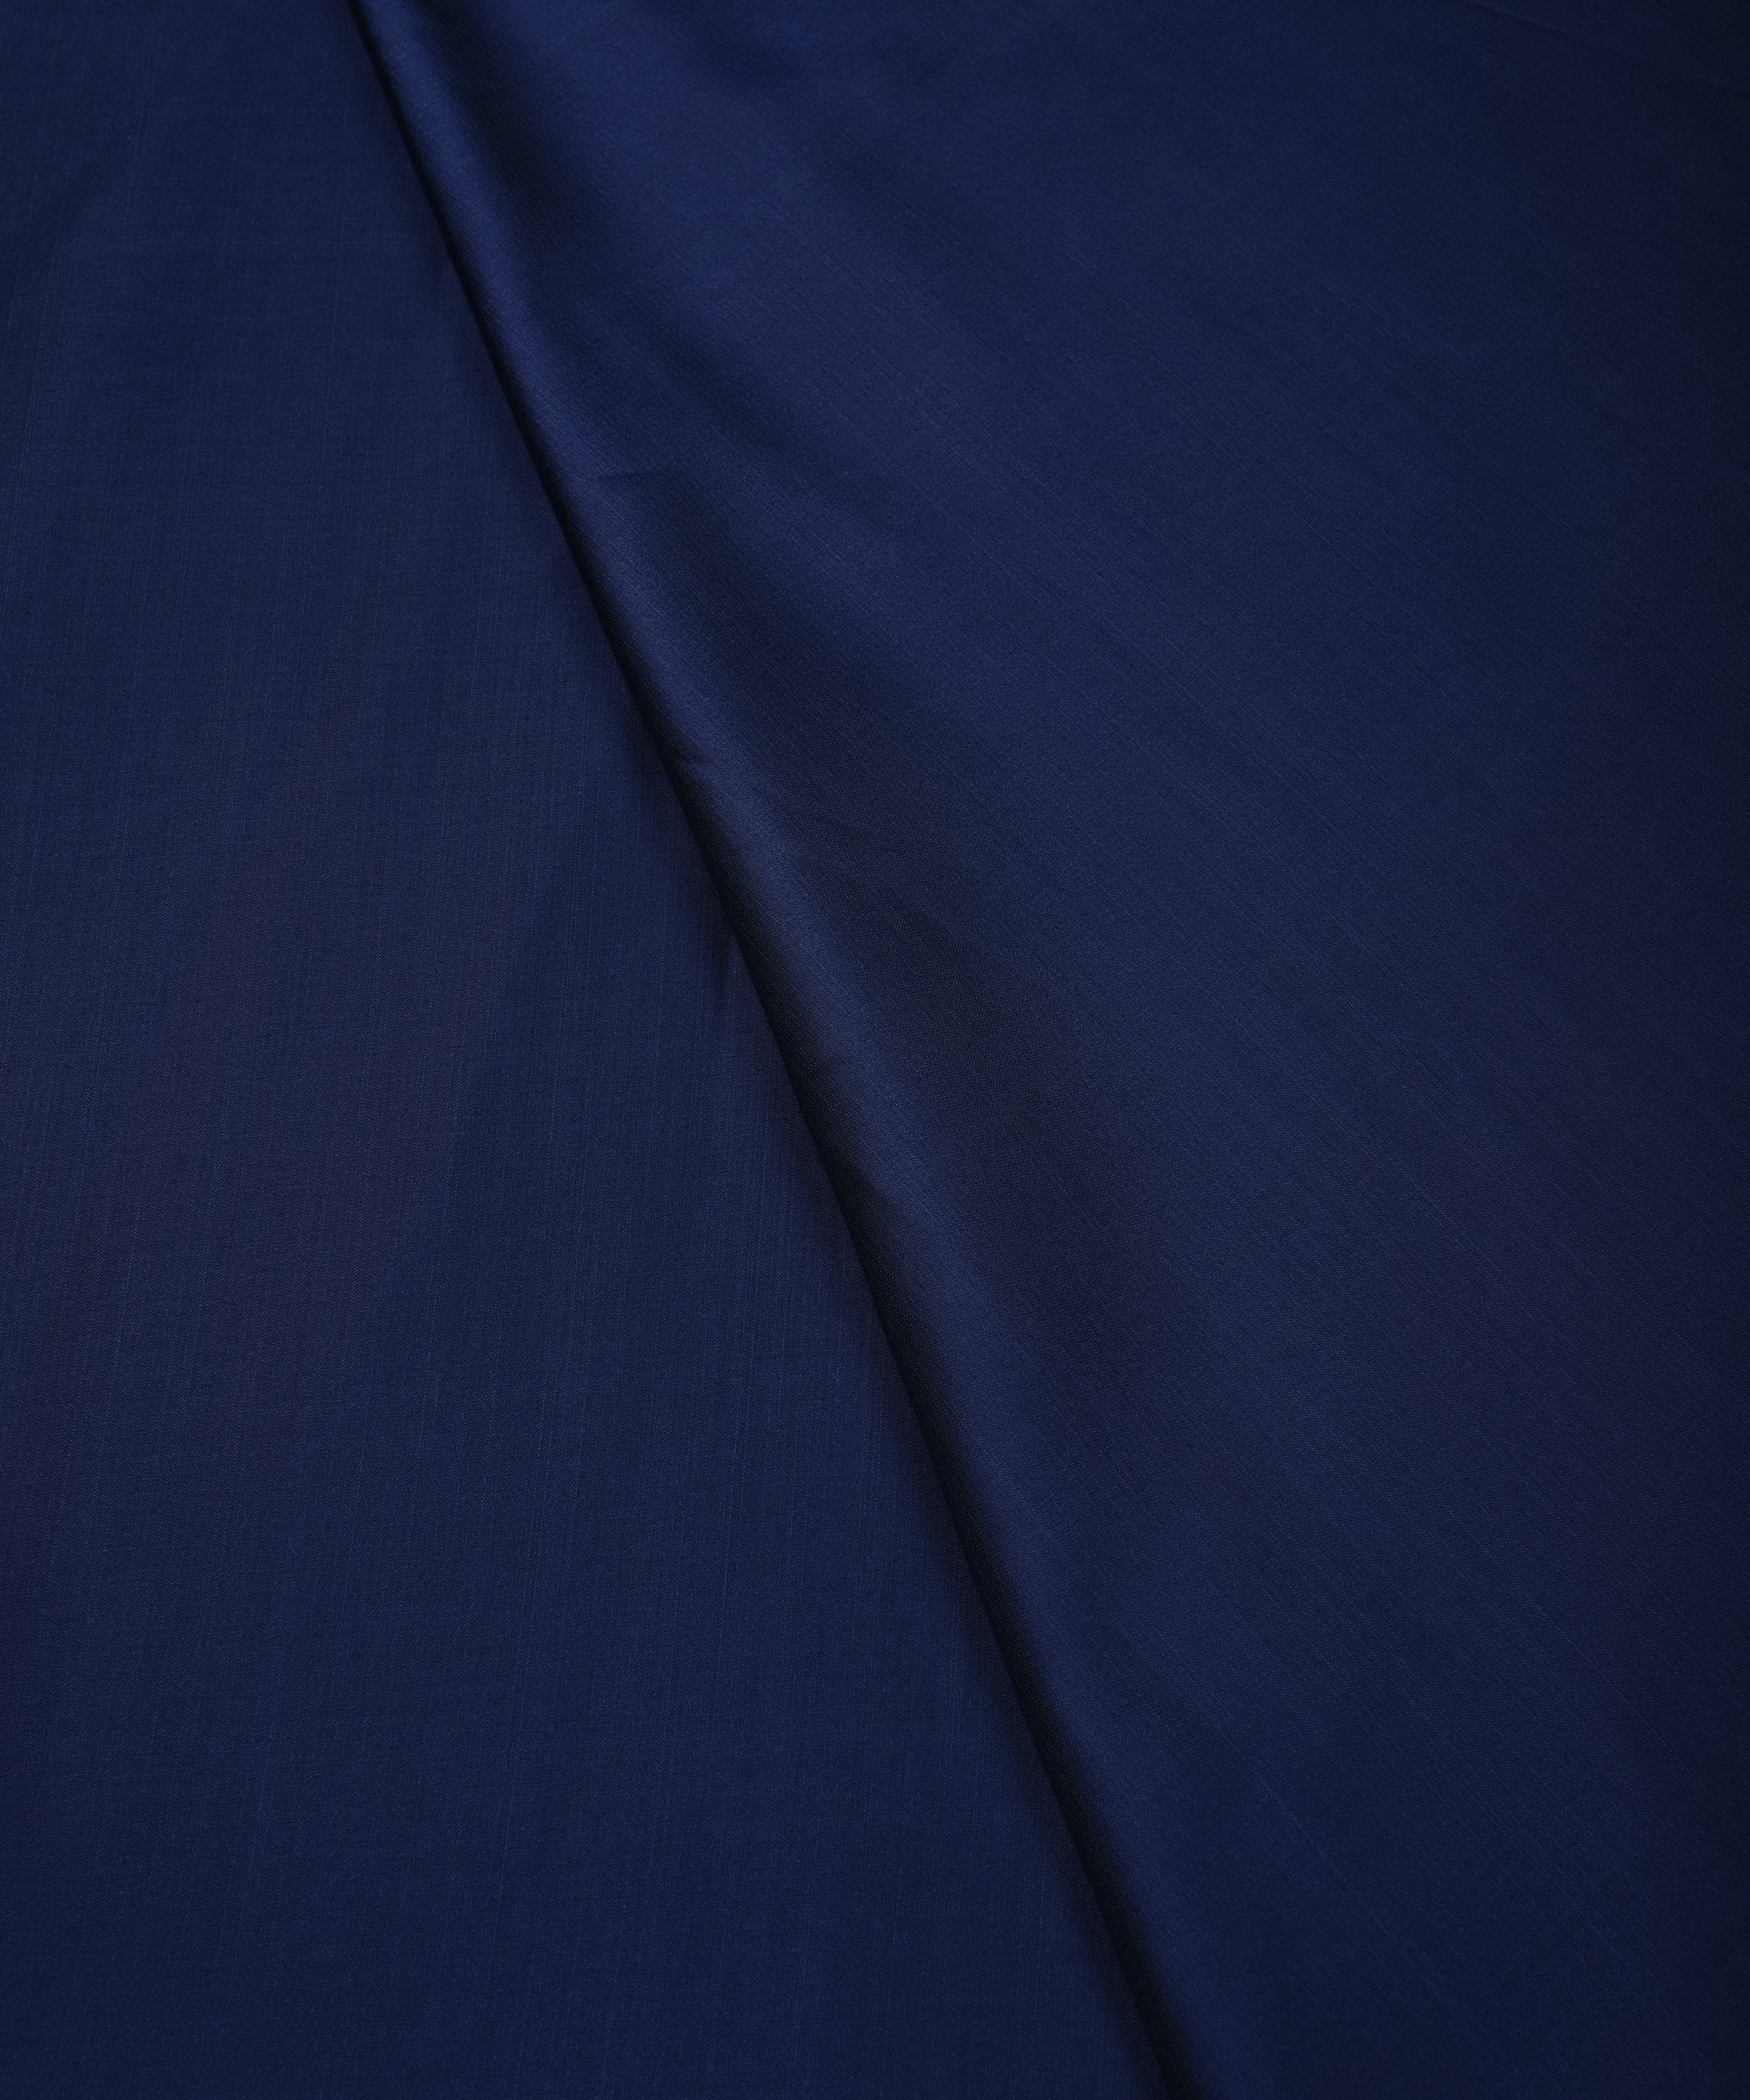 Navy Blue Plain Dyed Modal Satin Fabric